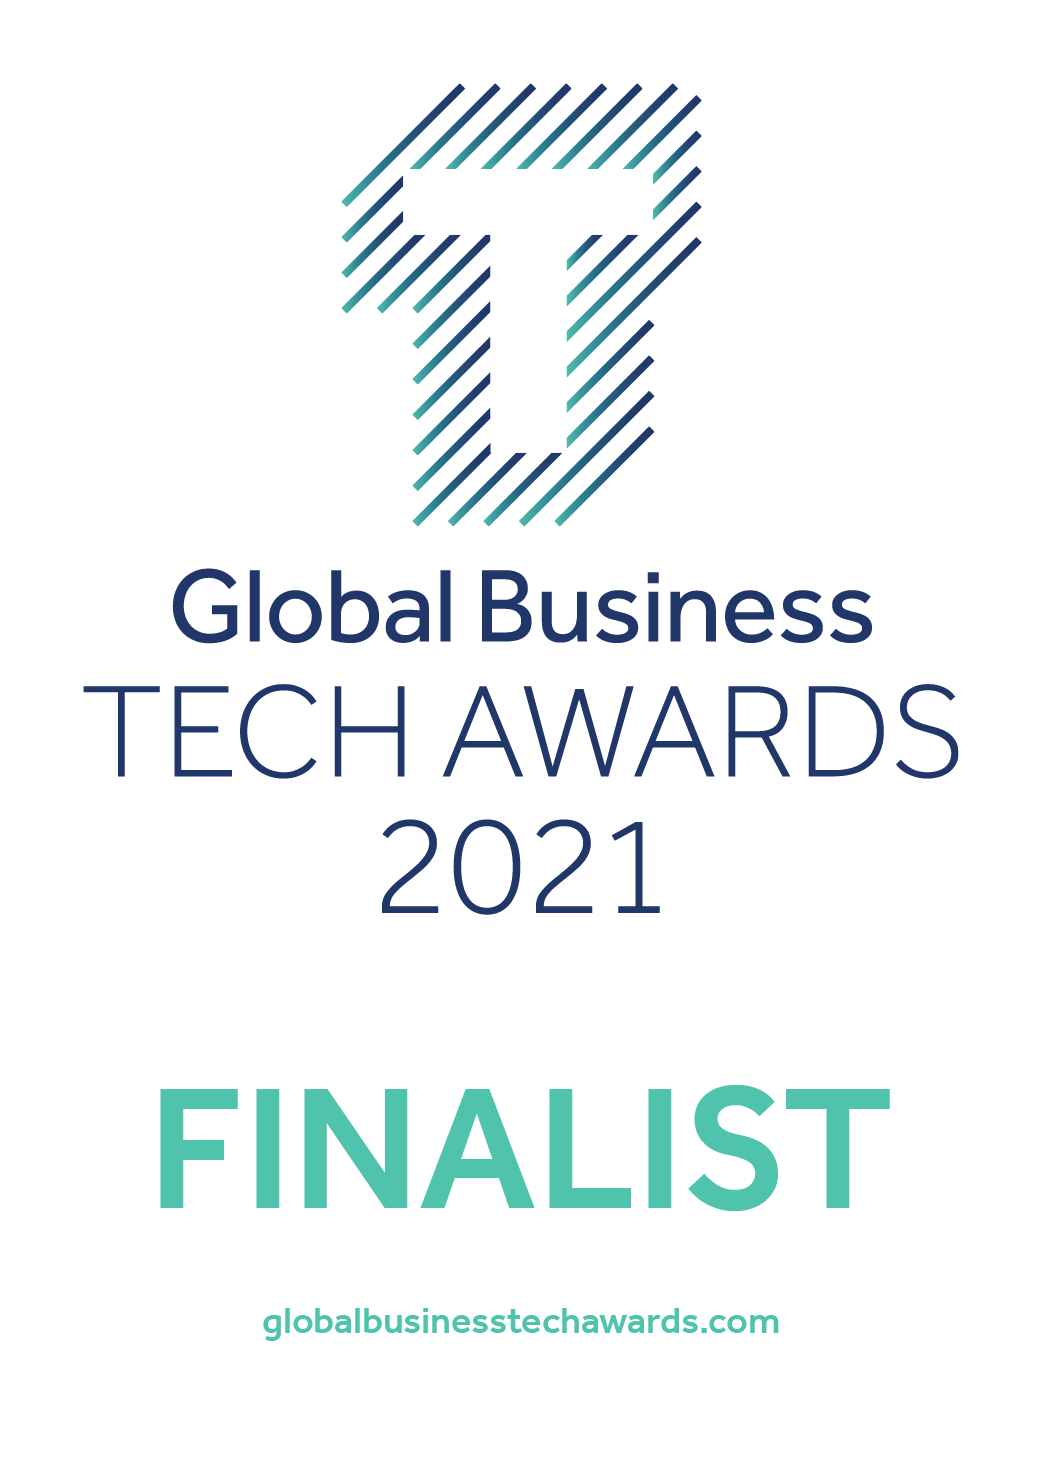 Global Business Tech Awards 2021 Finalist